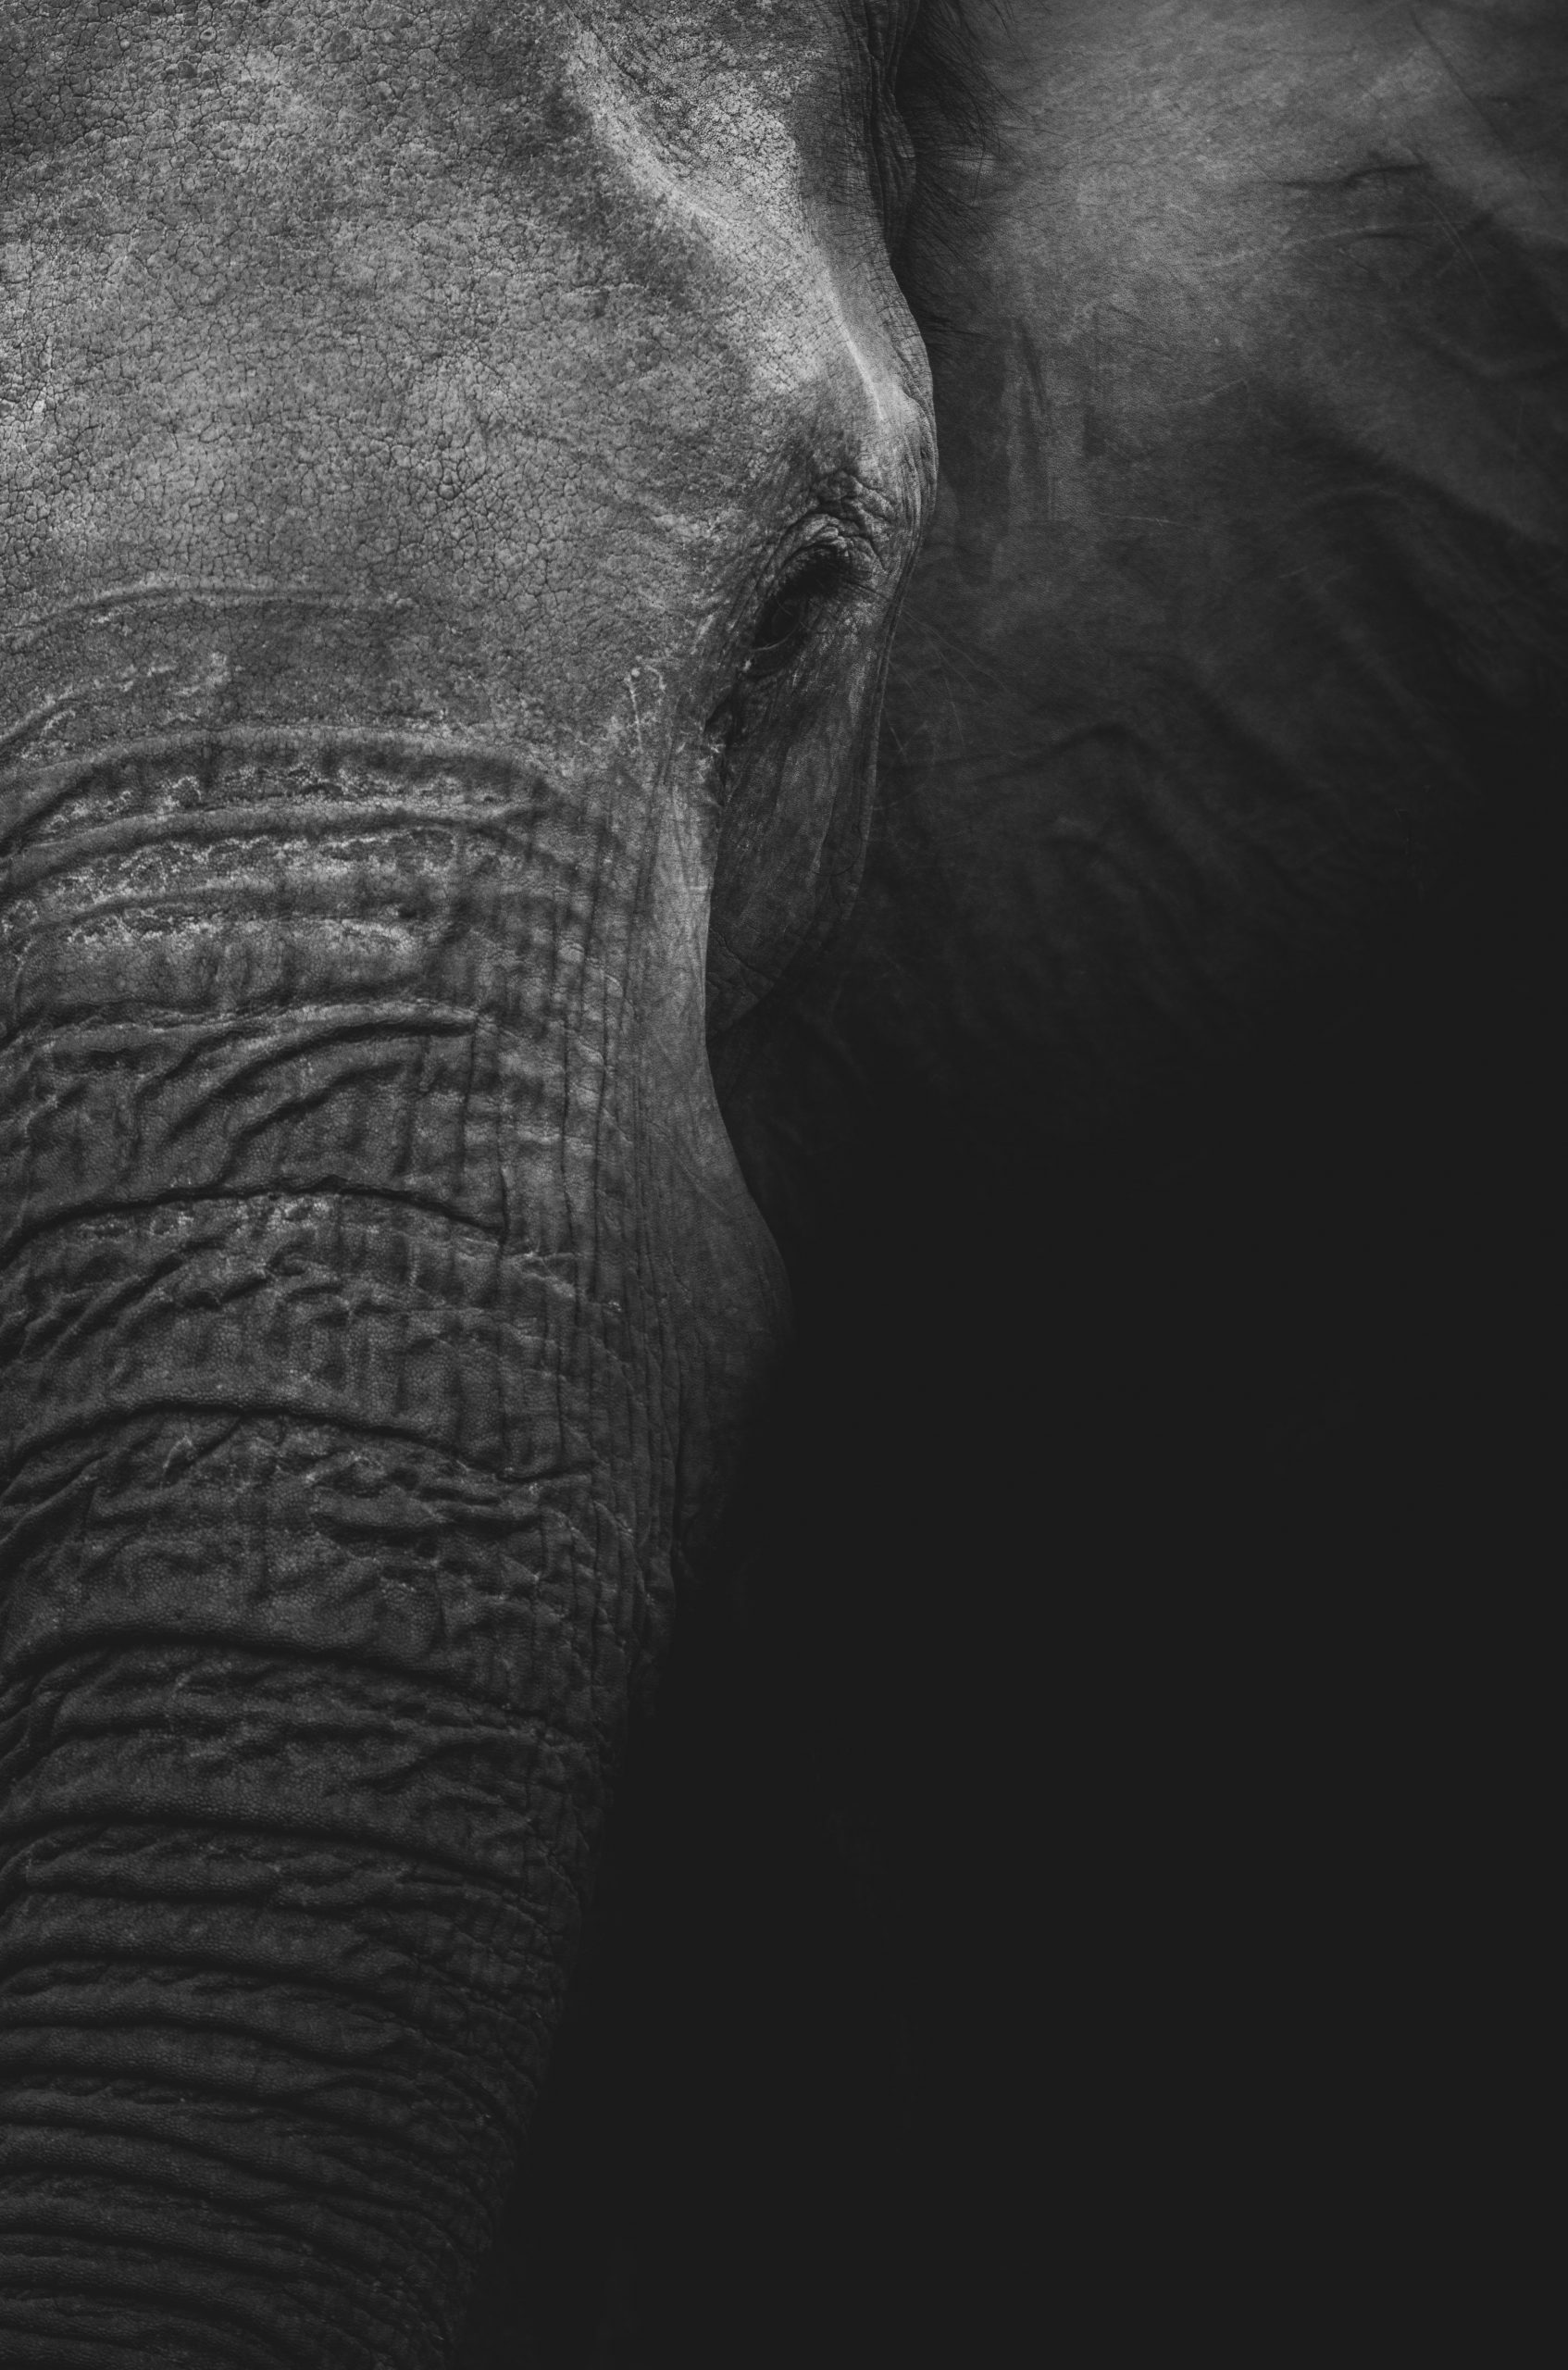 Viajes a Botswana - Tras la senda de los Elefantes - The Indiana Travel Experiences